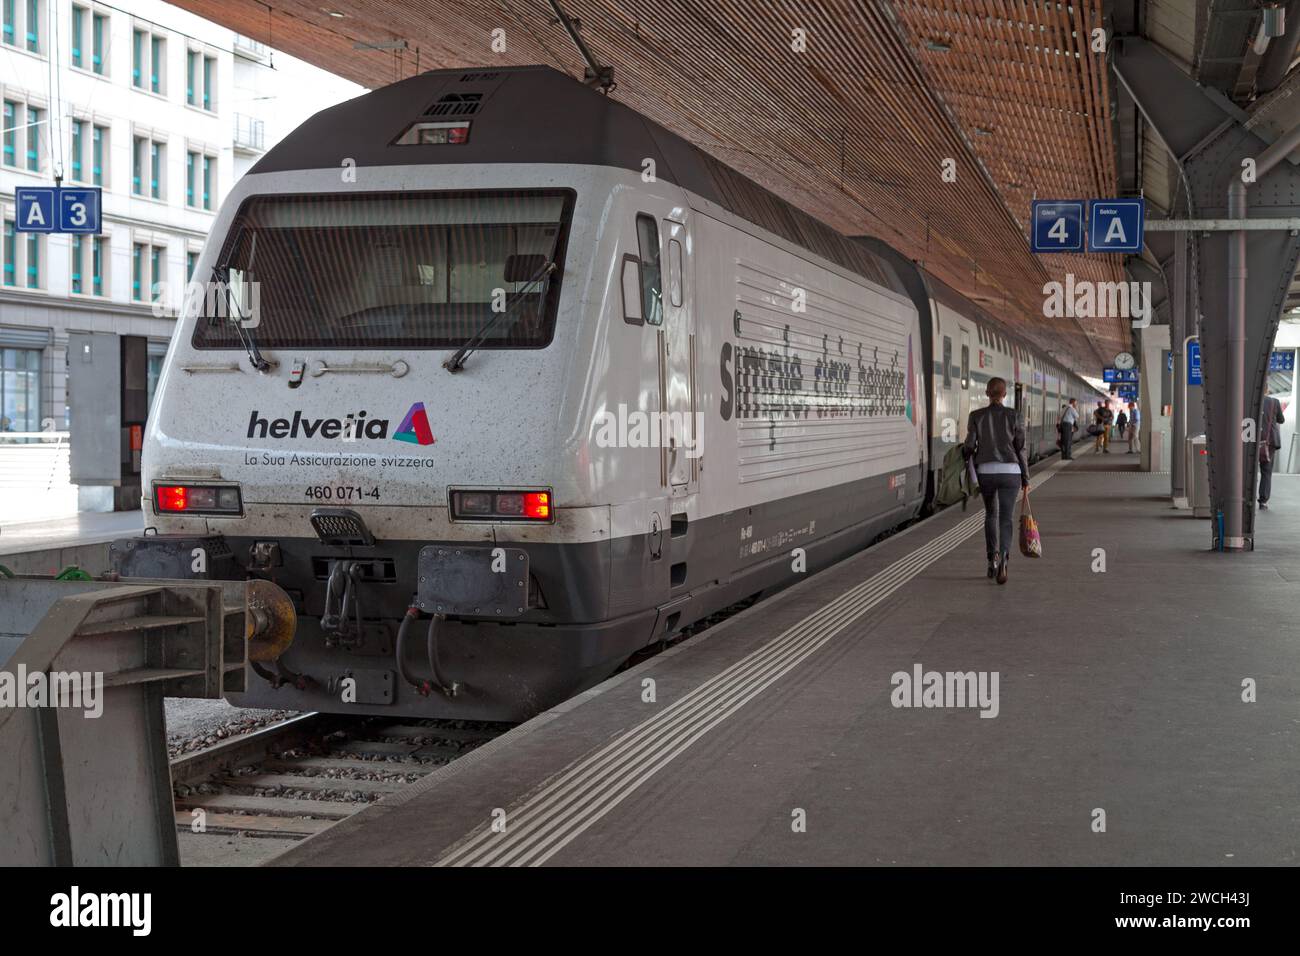 Zurigo, Svizzera - 13 giugno 2018: Il treno re 460 (popolarmente noto come Lok 2000) gestito dalle Ferrovie federali Svizzere nello stato dei treni HB di Zürich Foto Stock